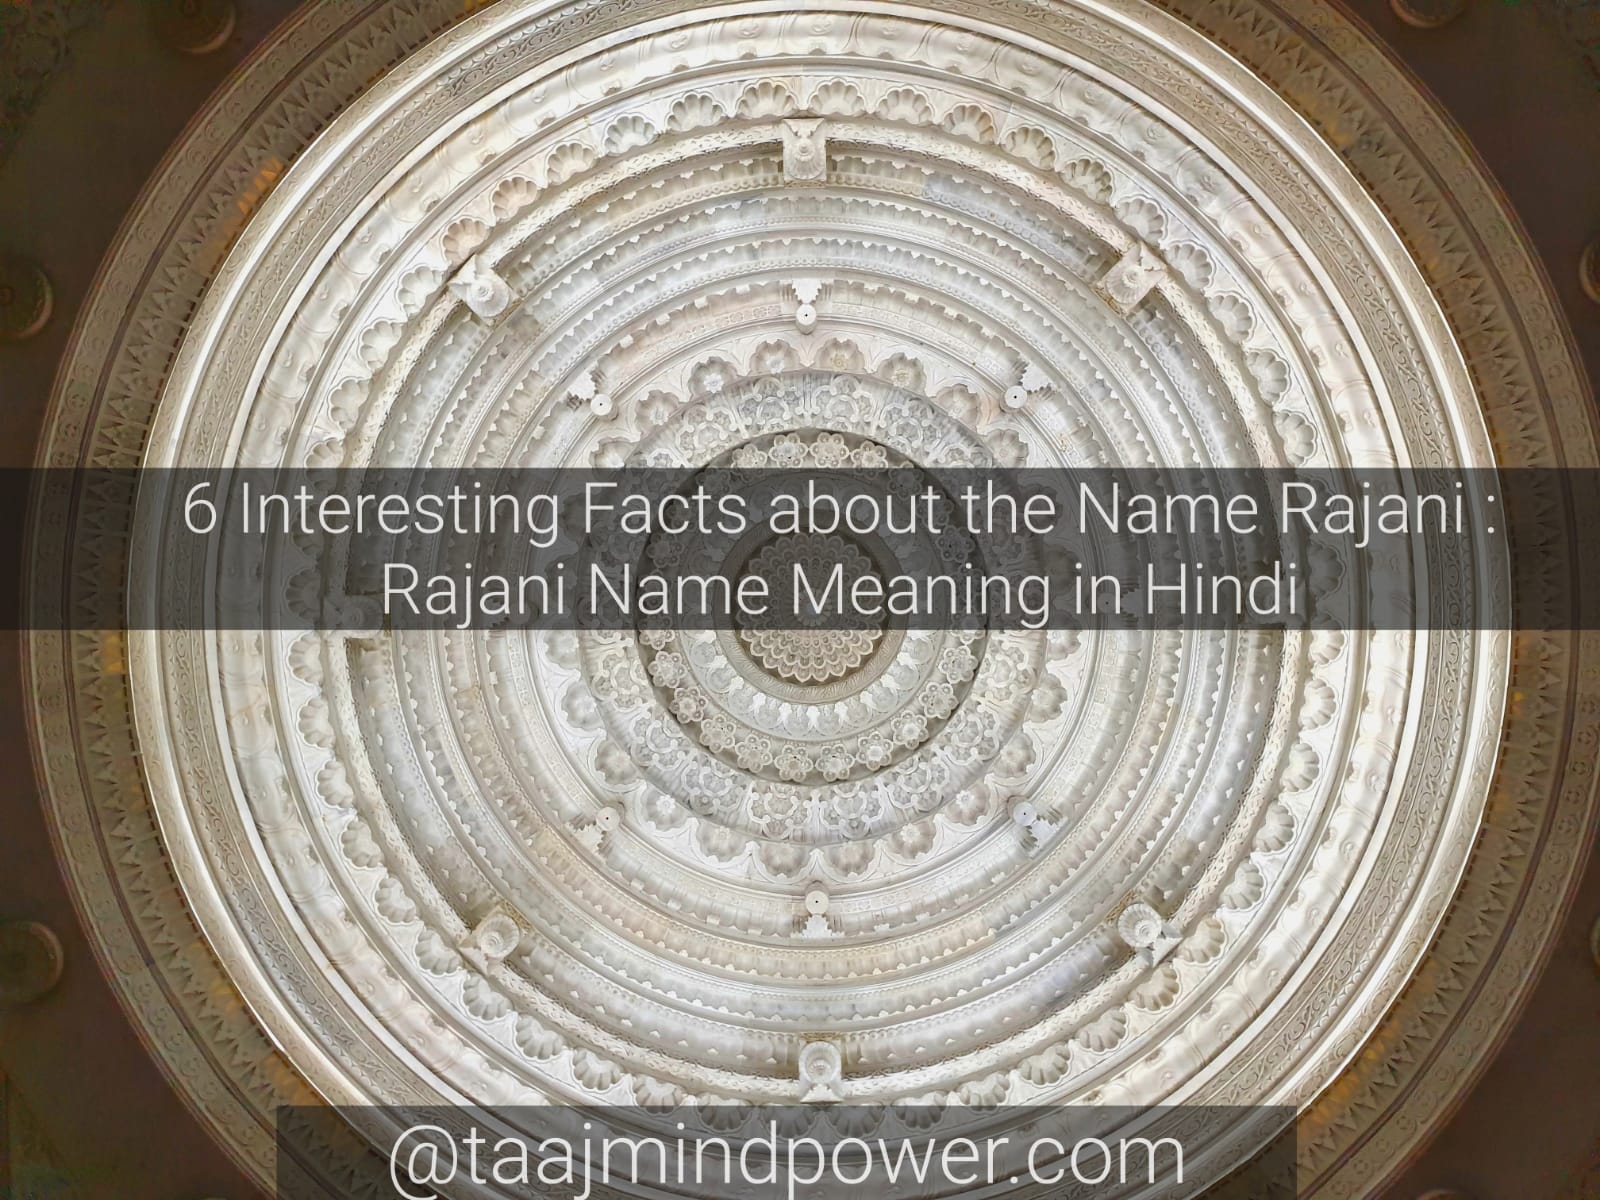 Rajani Name Meaning in Hindi